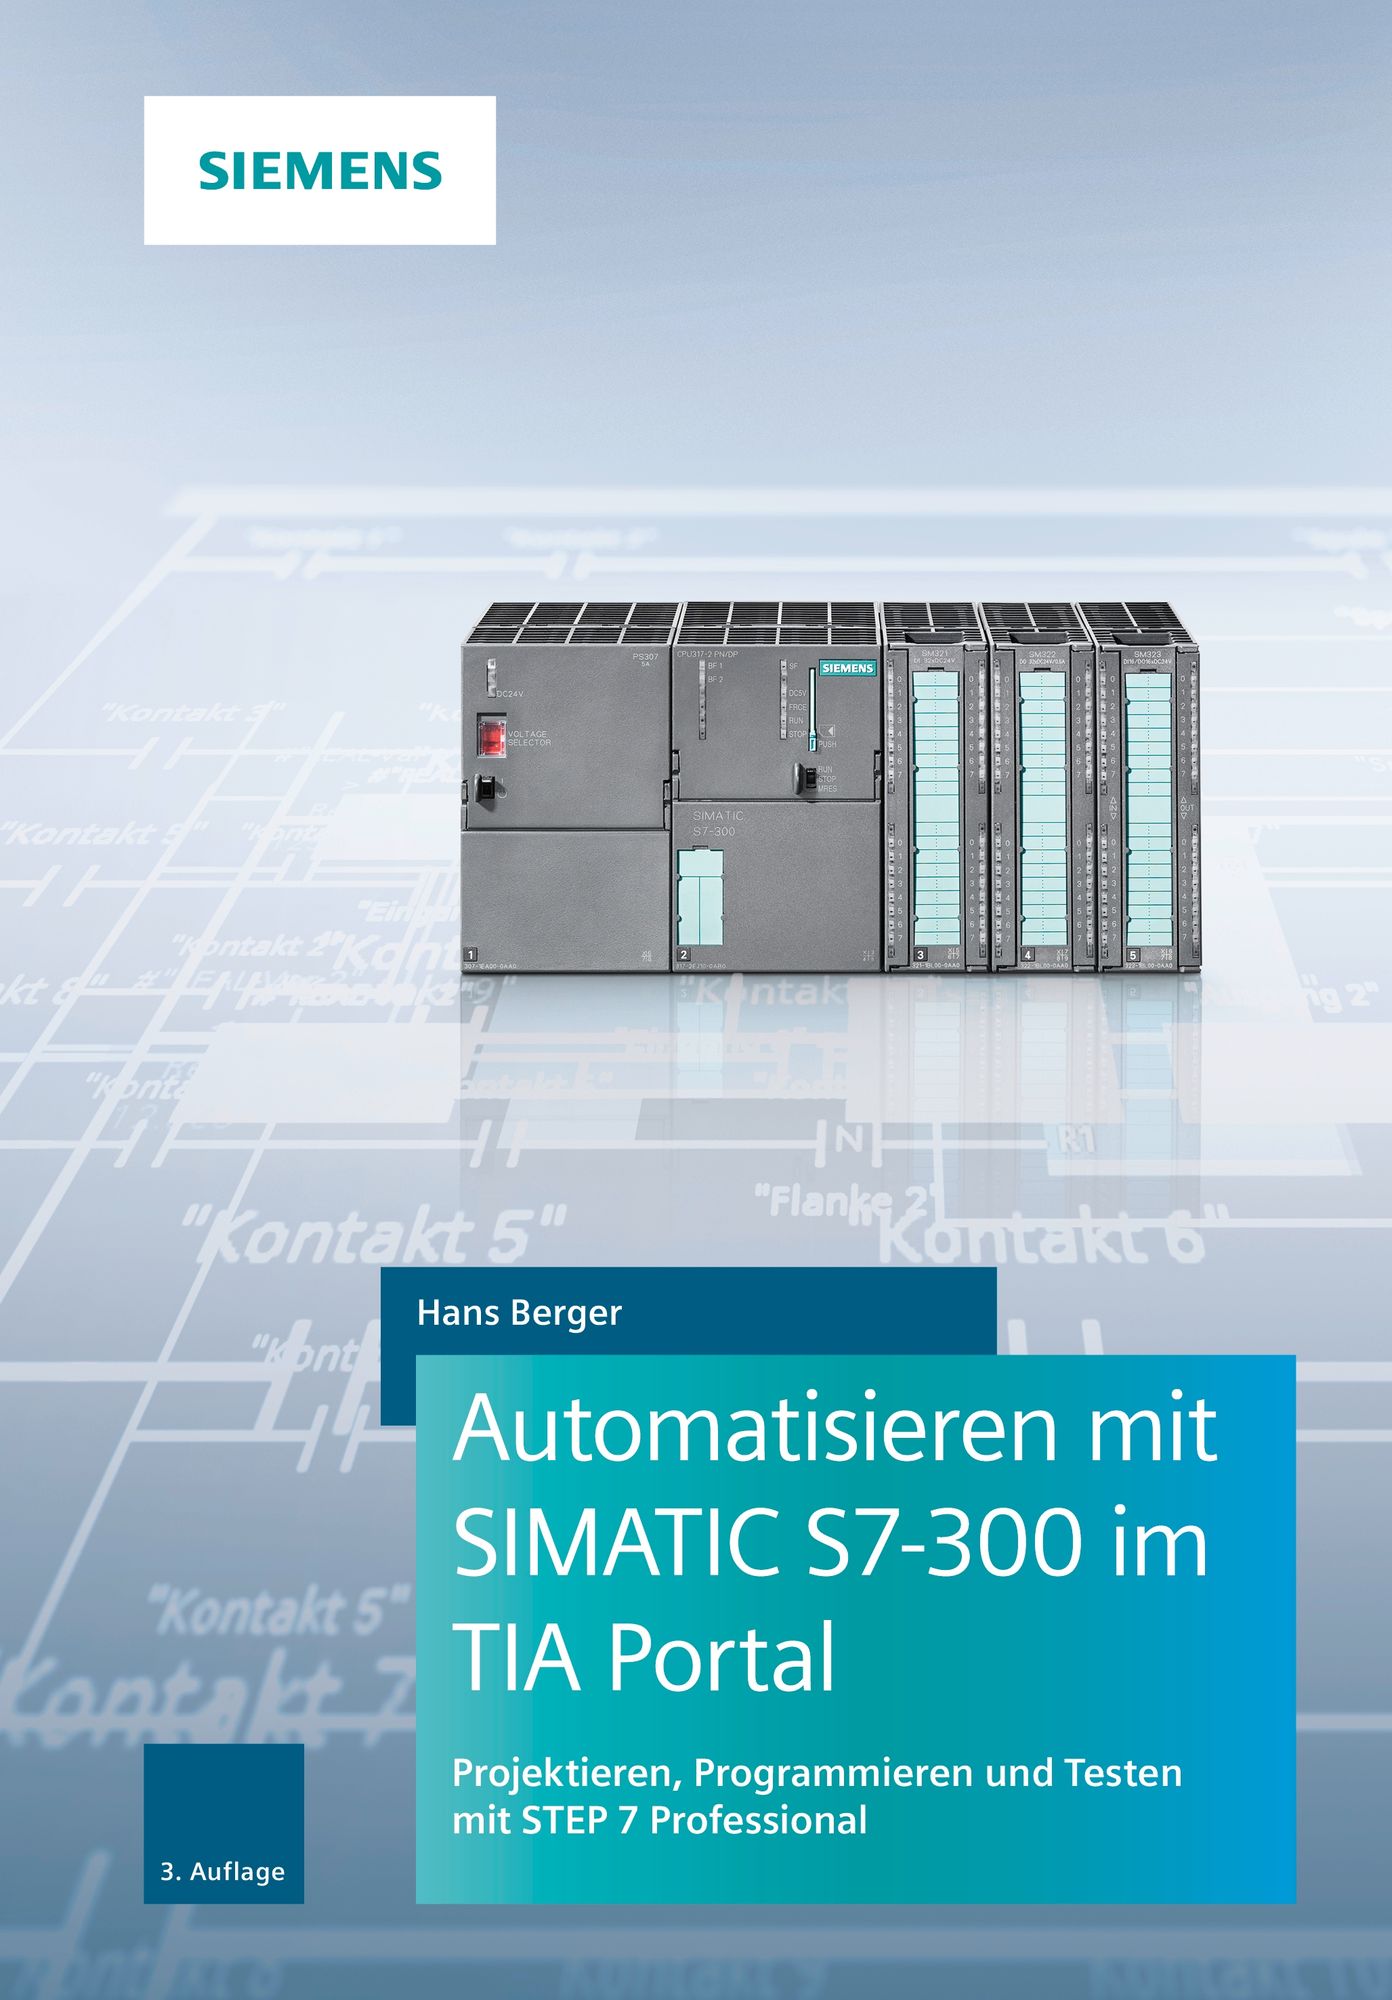 SIMATIC S7-300 - Siemens Japan